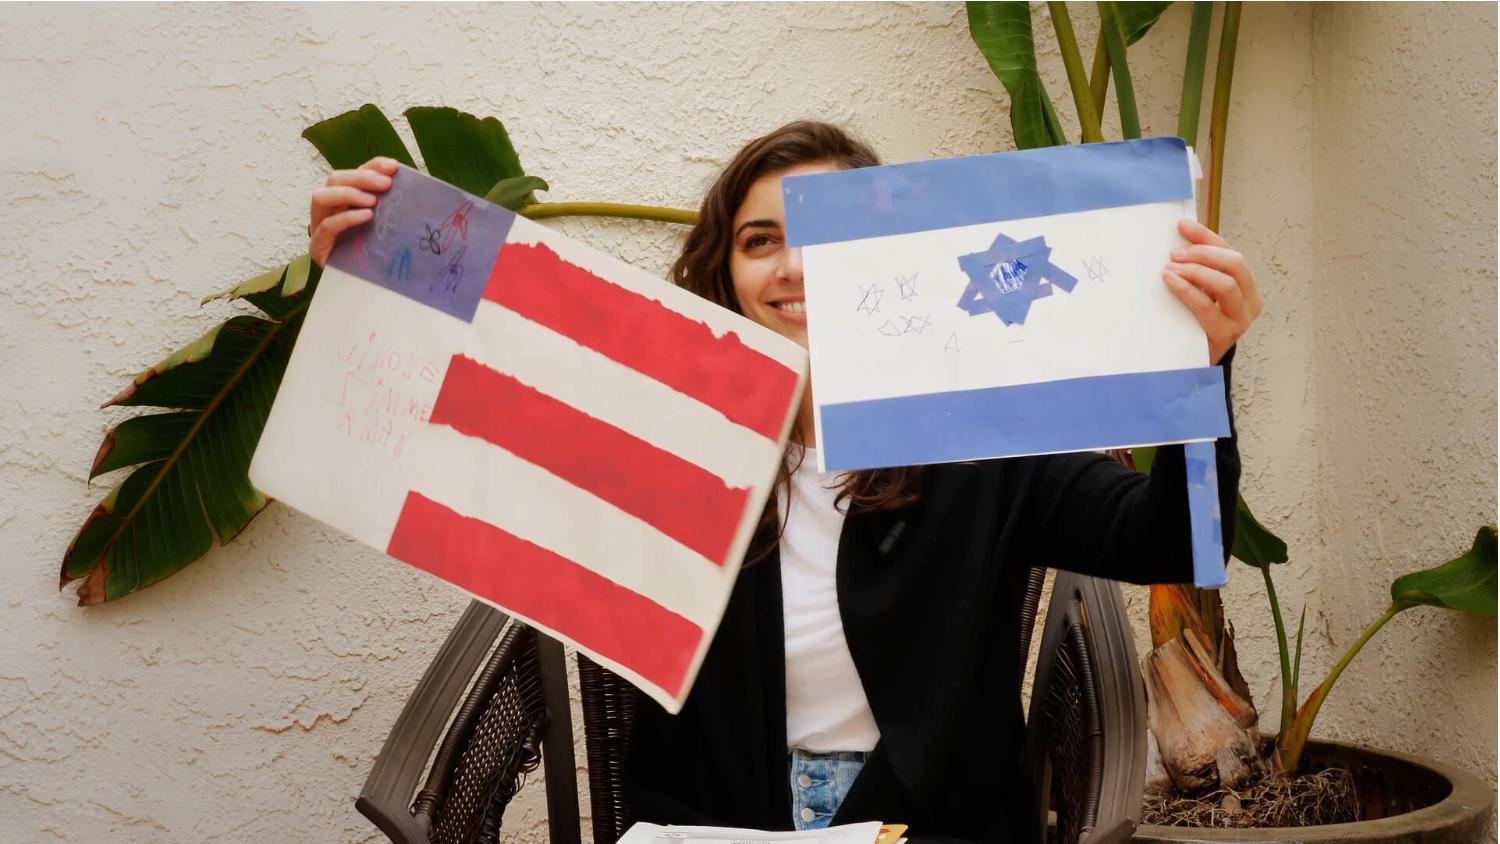 ”’Israelism’ följer unga amerikanska judar som drillats in i att tro att deras judiska identitet är ett med försvaret för en apartheid-stat”, skriver Elina Pahnke.